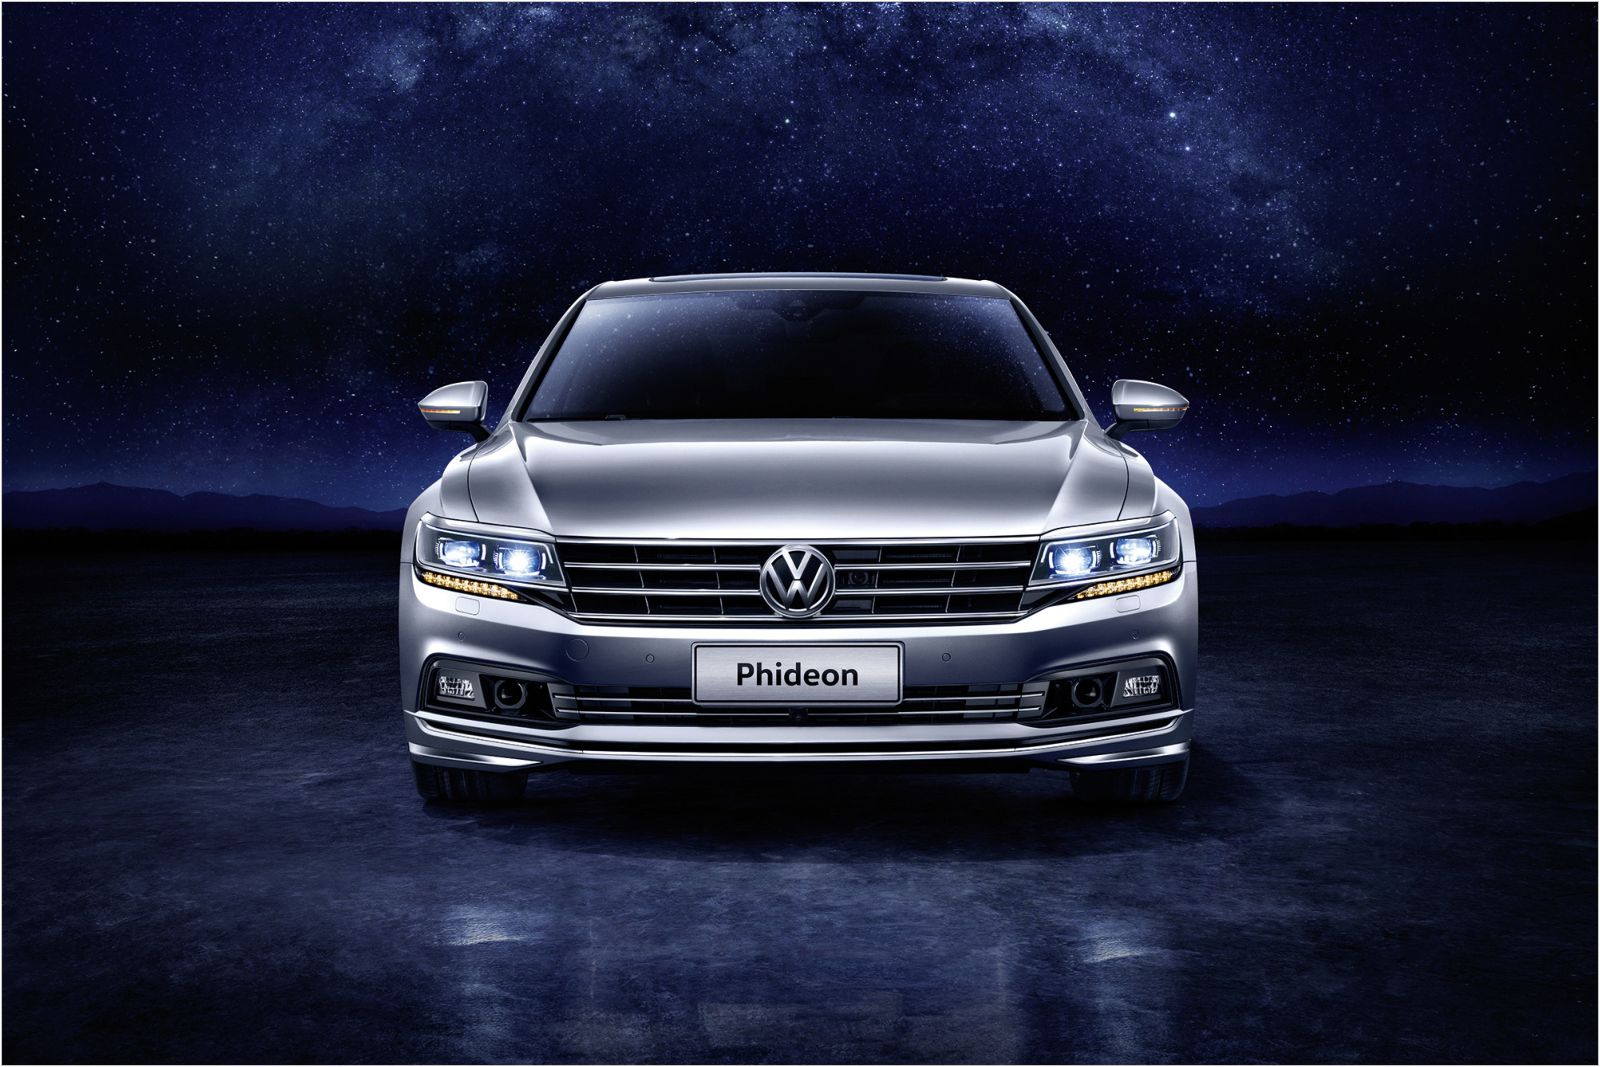 Volkswagen Phideon, 1600x1067px, img-2